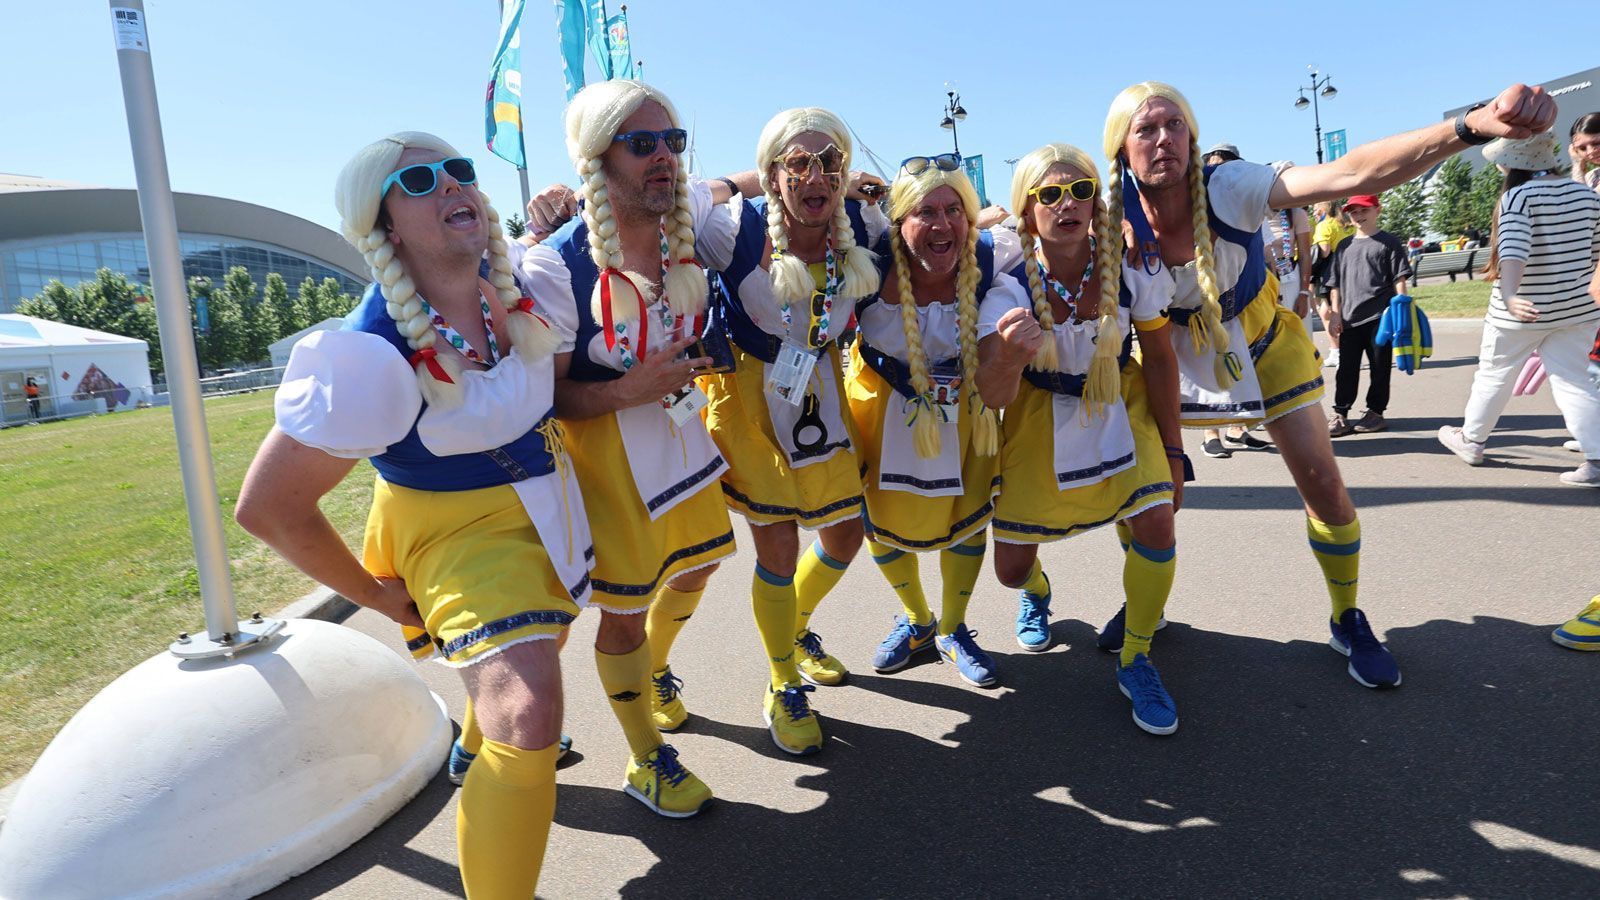 
                <strong>Schwedische Fans übernahmen in Sankt Petersburg</strong><br>
                Die Outfits dieser schwedischen Fans waren zweifelsfrei elitär. Doch am Ende konnten sie die Mannschaft so zu einem 1:0-Sieg pushen.
              